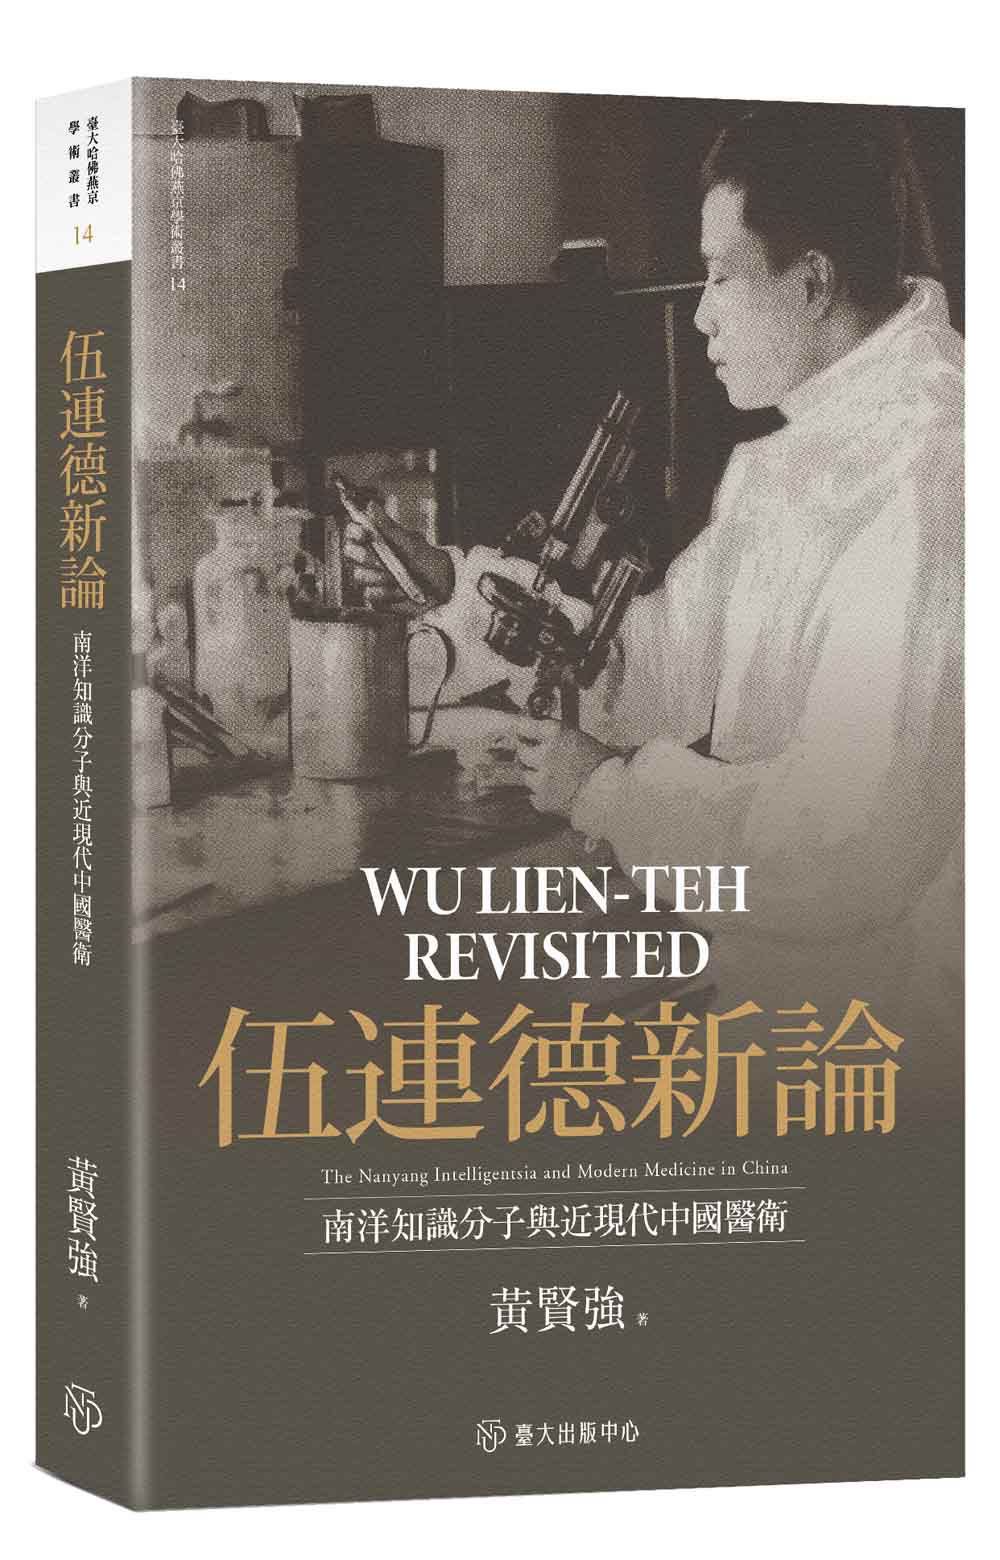 伍連德新論──南洋知識分子與近現代中國醫衛